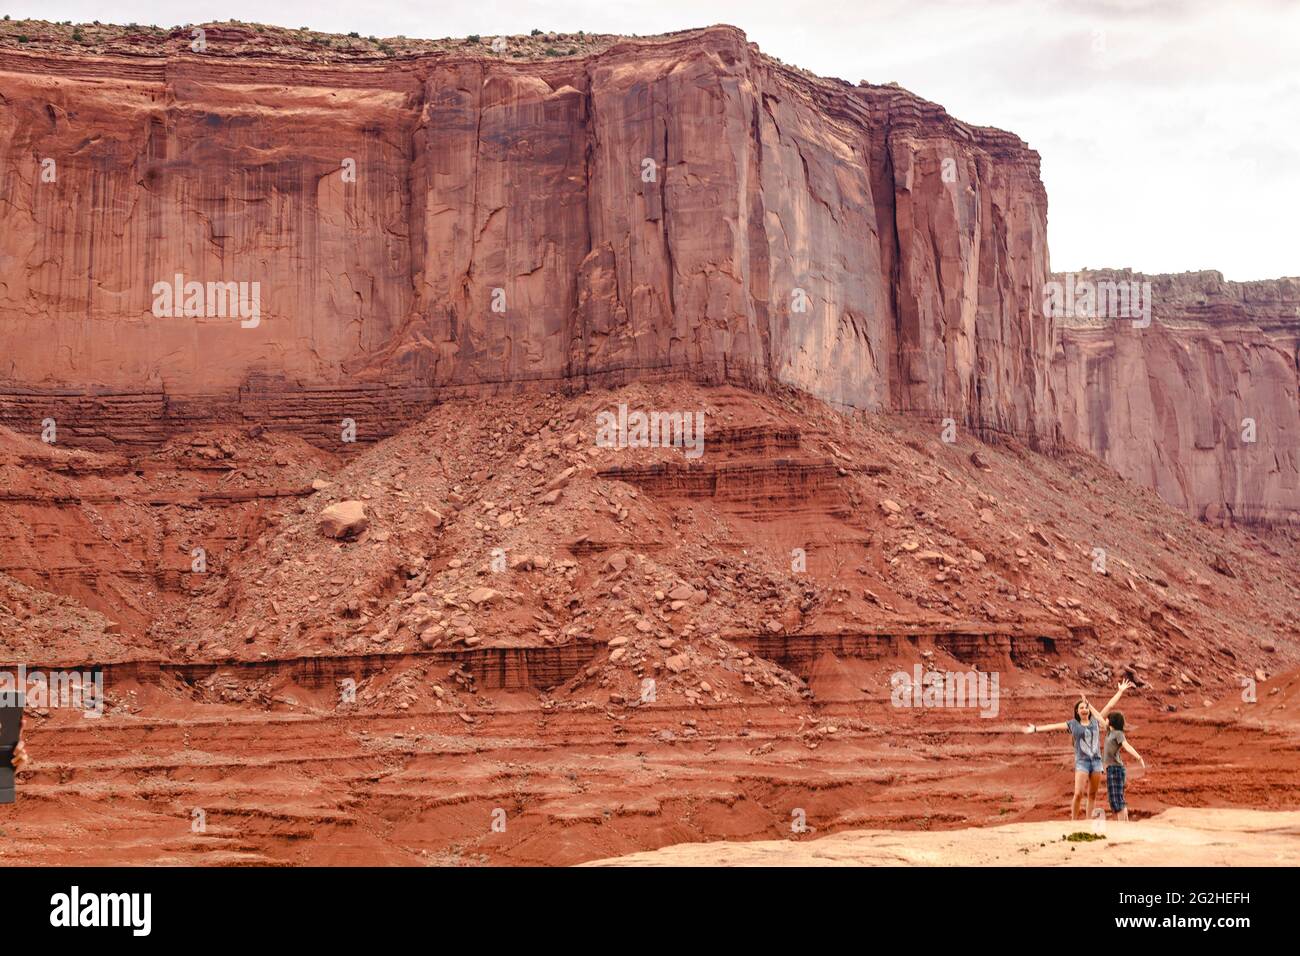 John Ford Point - ein Aussichtspunkt mit atemberaubenden Ausblicken auf zerklüftete Buten, benannt nach dem Regisseur, der hier im Monument Valley, Arizona, USA, mehrere Filme zeigt Stockfoto